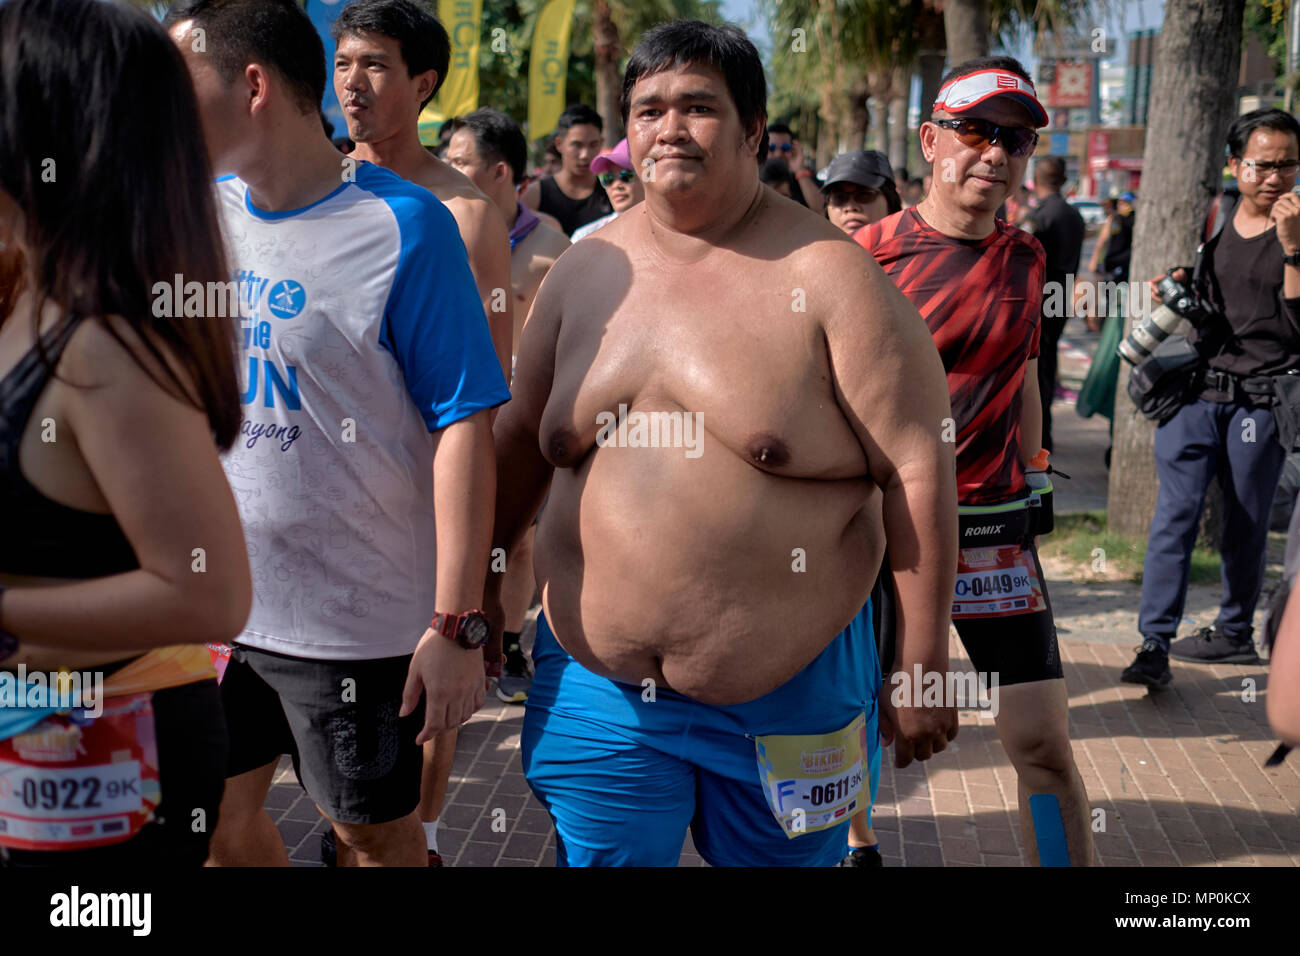 Homme obèse participant à un événement Fun Run. Concurrents en surpoids, Pattaya, Thaïlande, 2018 Banque D'Images